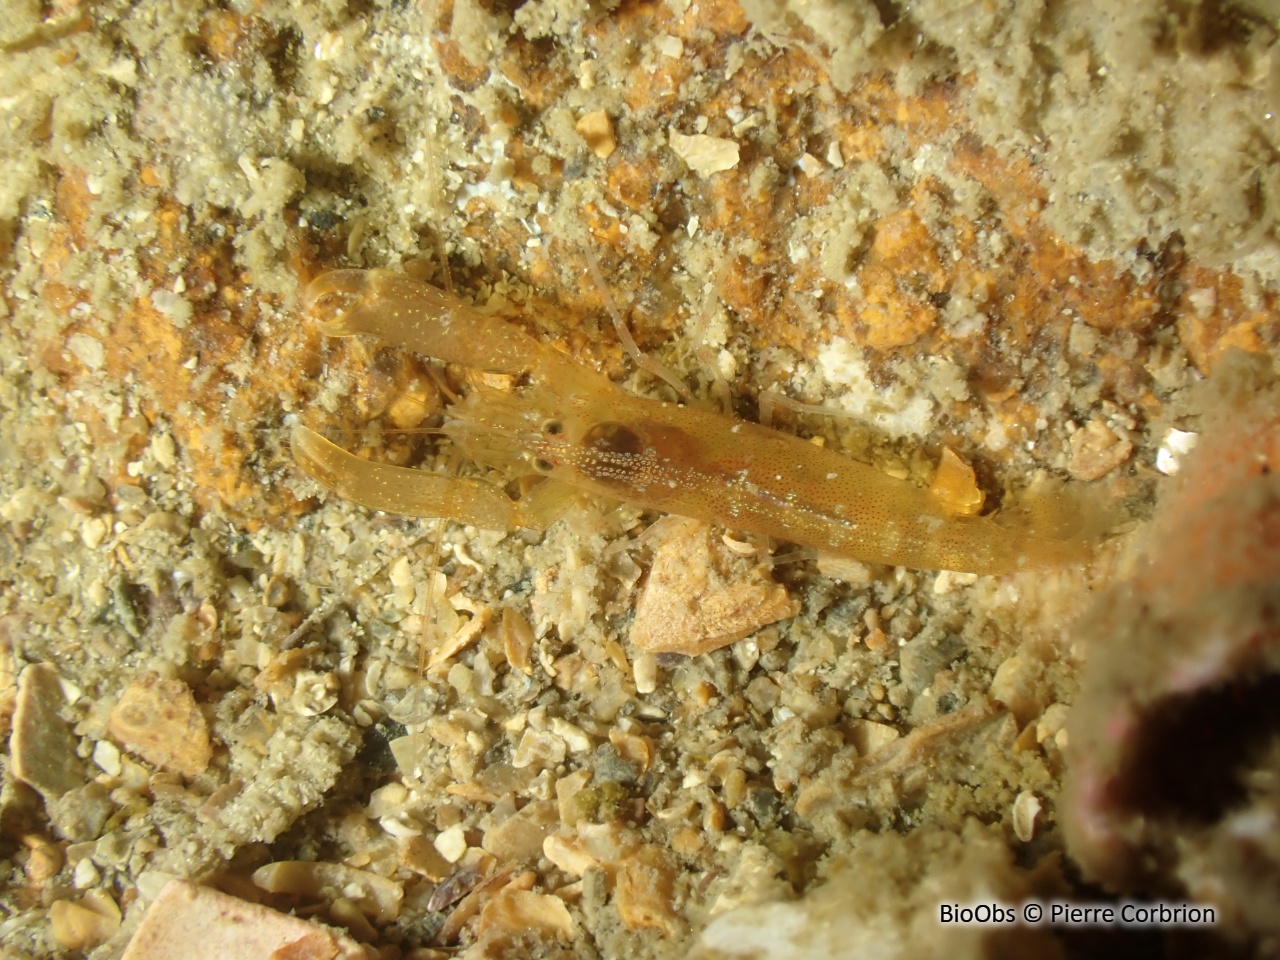 Crevette à capuchon - Athanas nitescens - Pierre Corbrion - BioObs